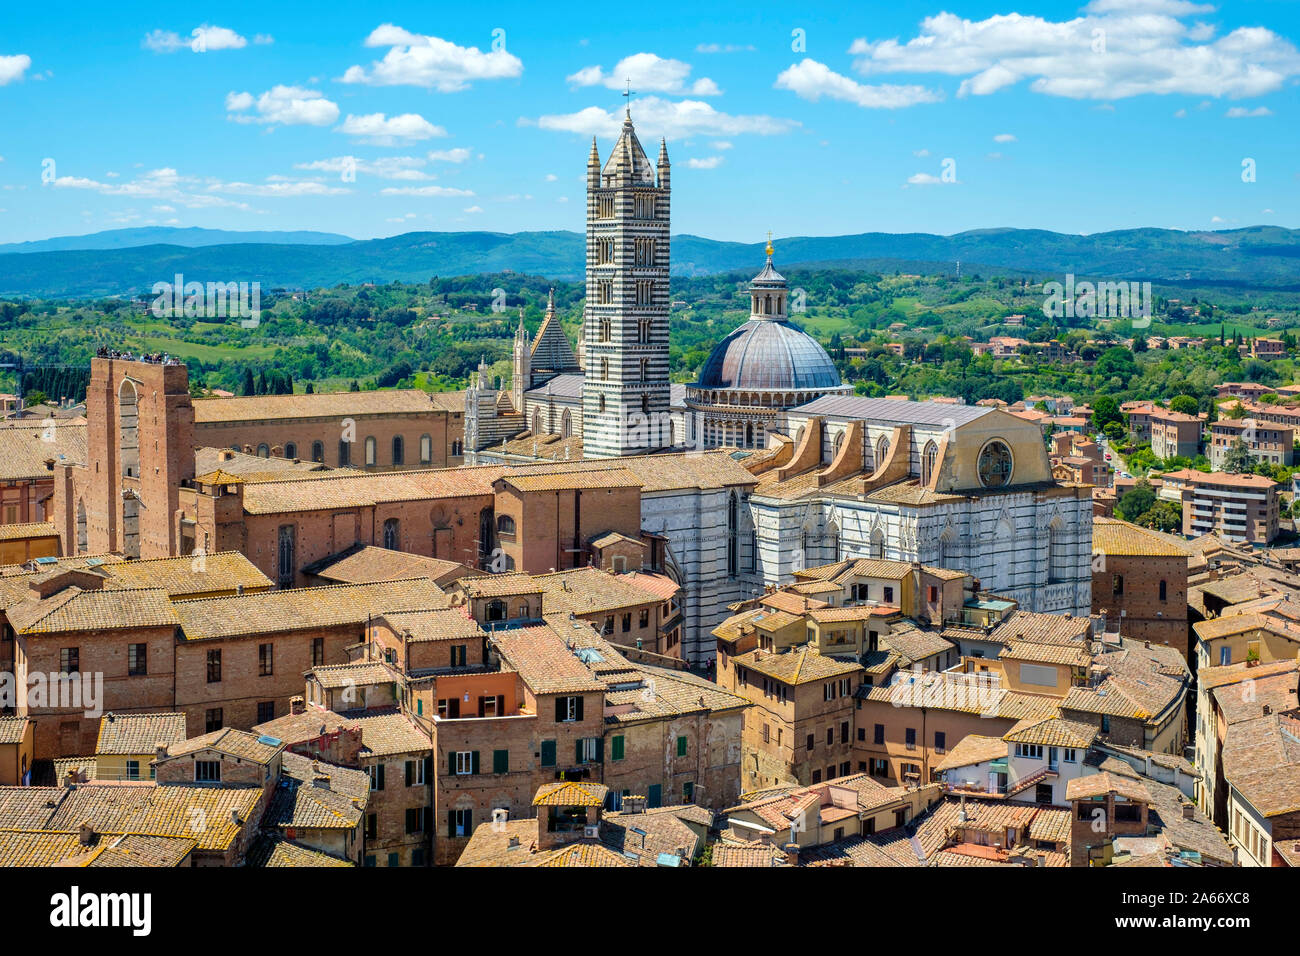 Angolo di alta vista del Duomo di Siena (Cattedrale di Siena) e gli edifici della città vecchia. UNESCO World Heritage Site, Siena, Toscana, Italia, Europa. Foto Stock